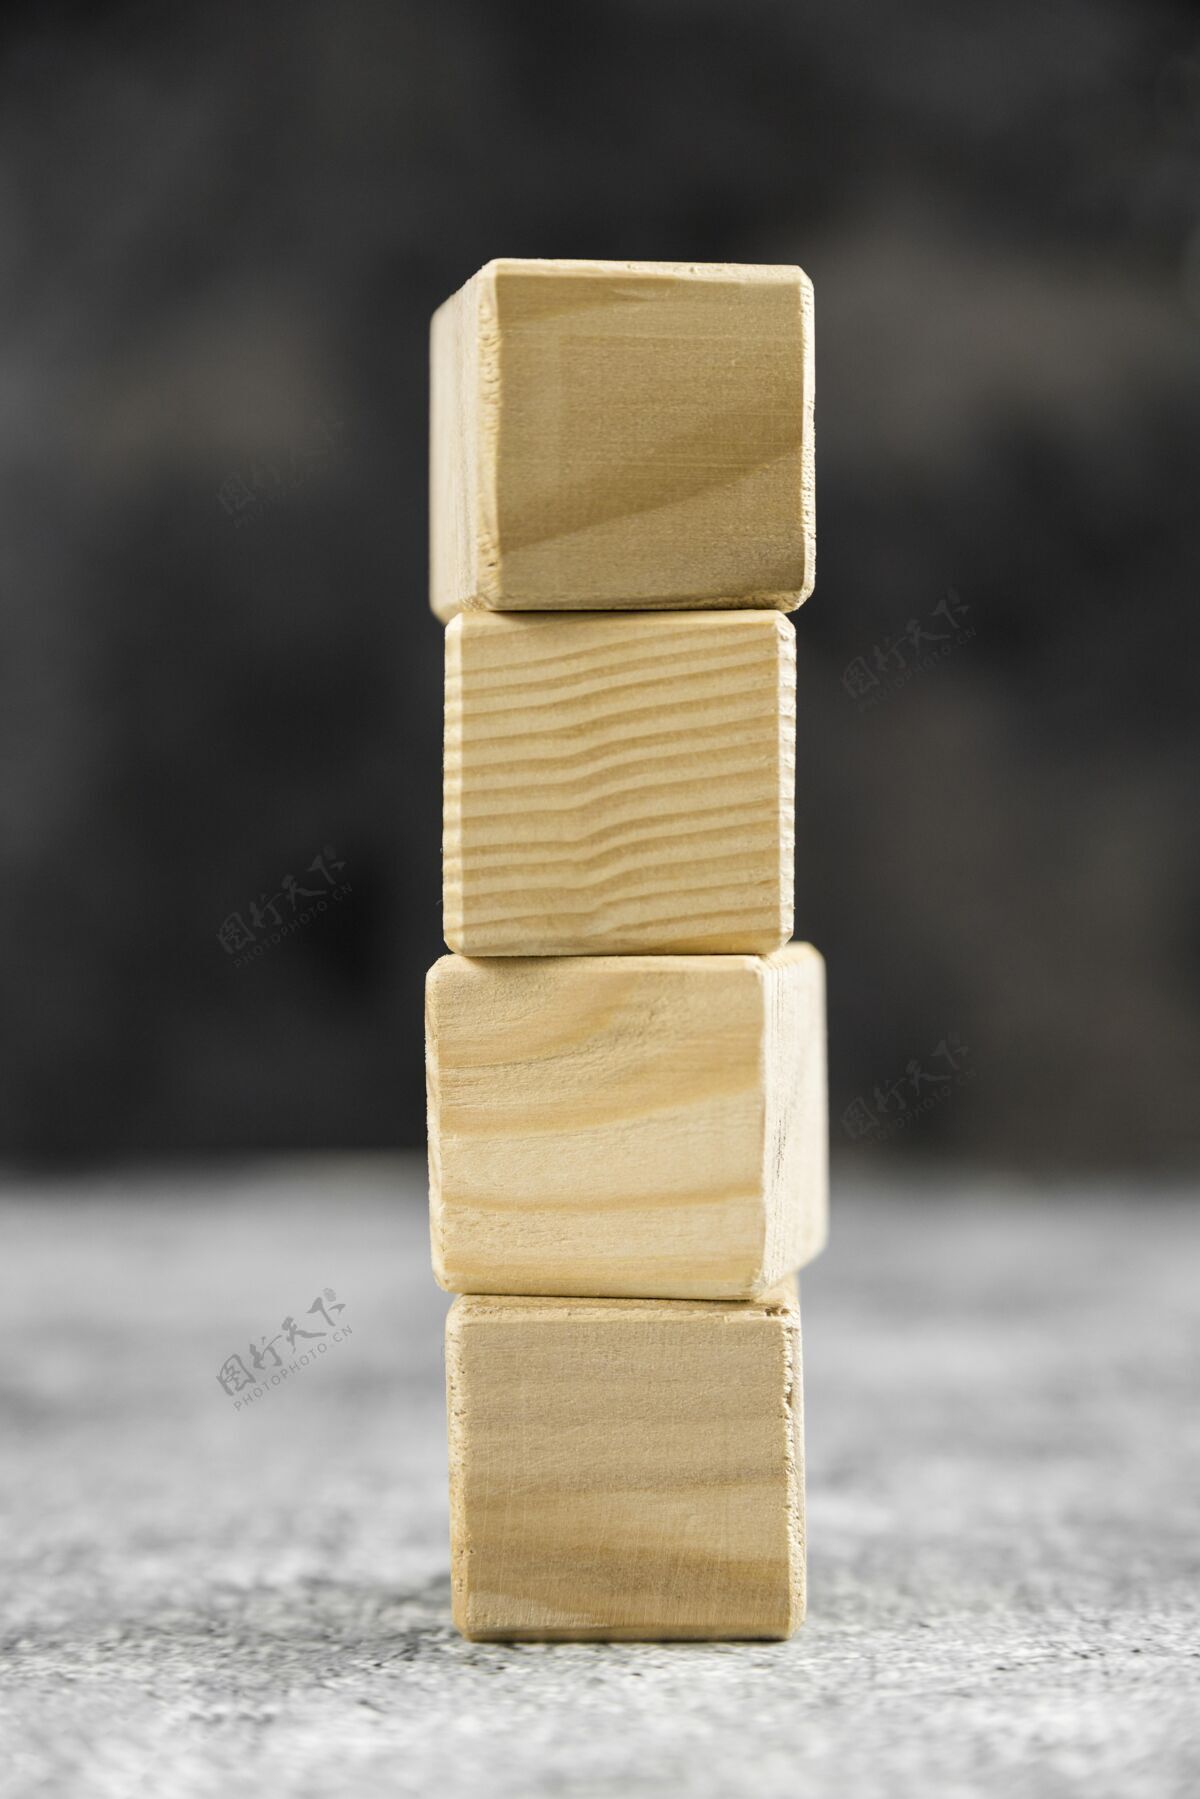 感觉空木块的排列静物立方体分类